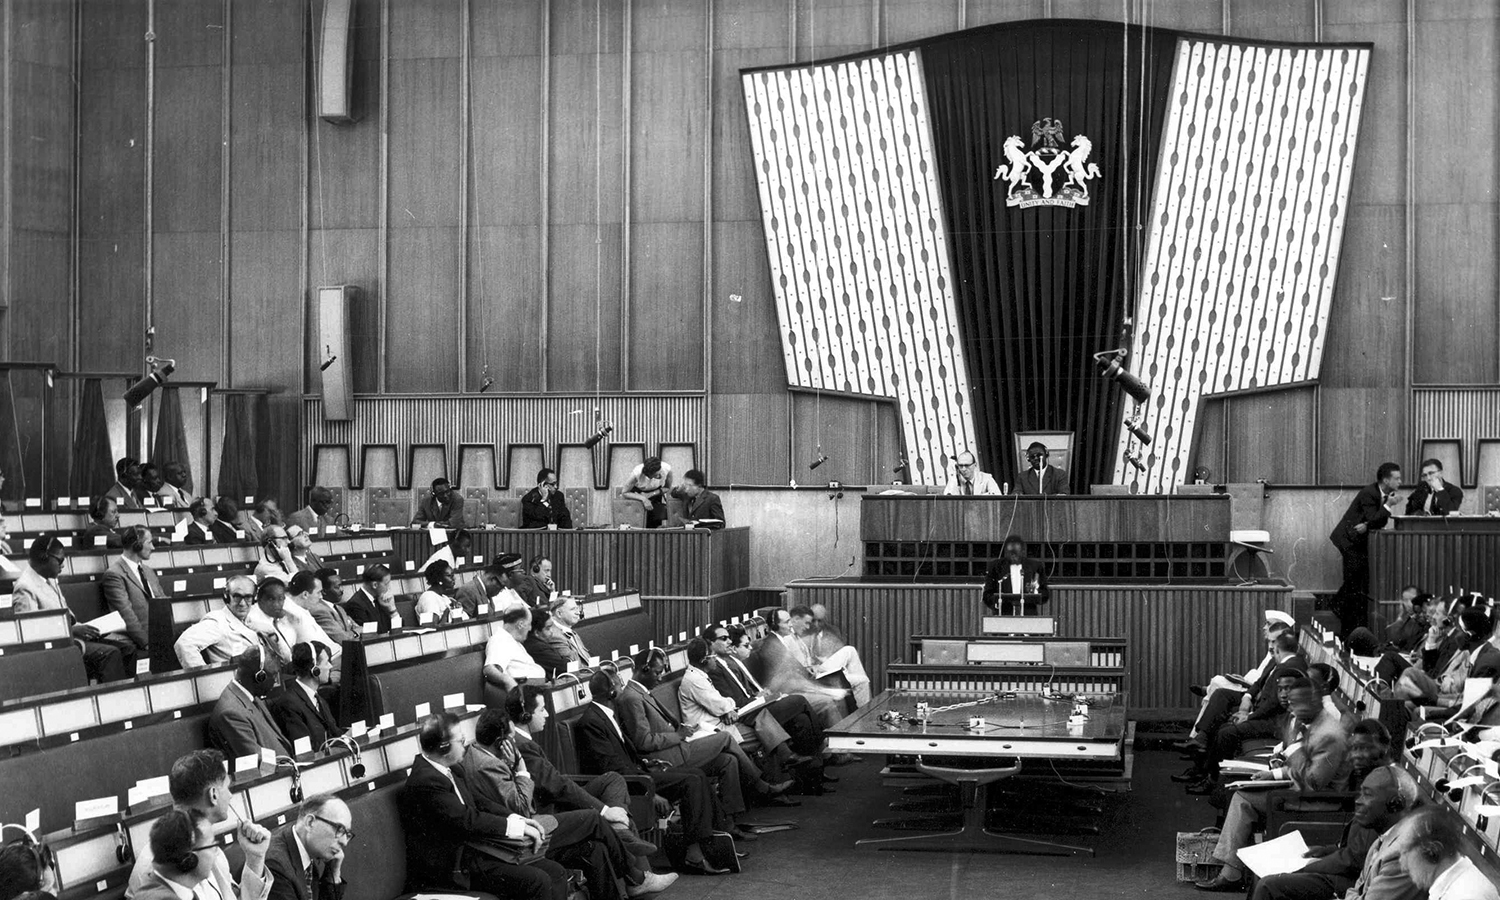 1a Conferenza regionale OIL in Africa presso Lagos (Nigeria), Delegati durante la conferenza, Archivi storici OIL, 1960.